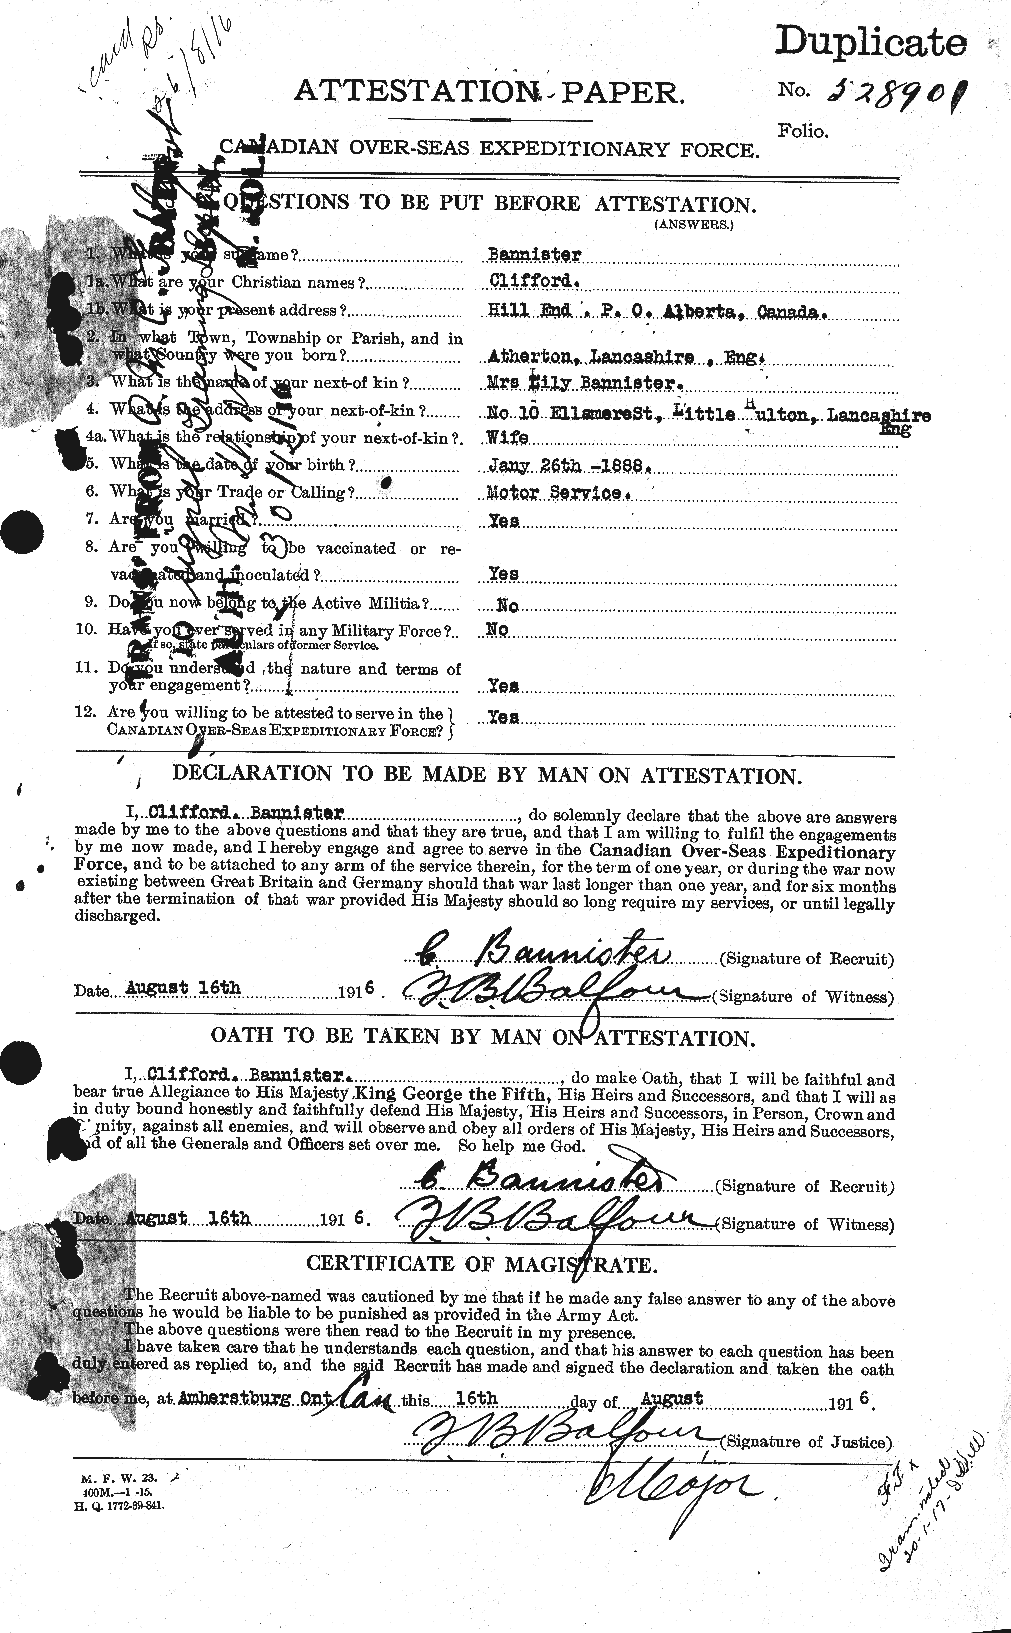 Dossiers du Personnel de la Première Guerre mondiale - CEC 224807a